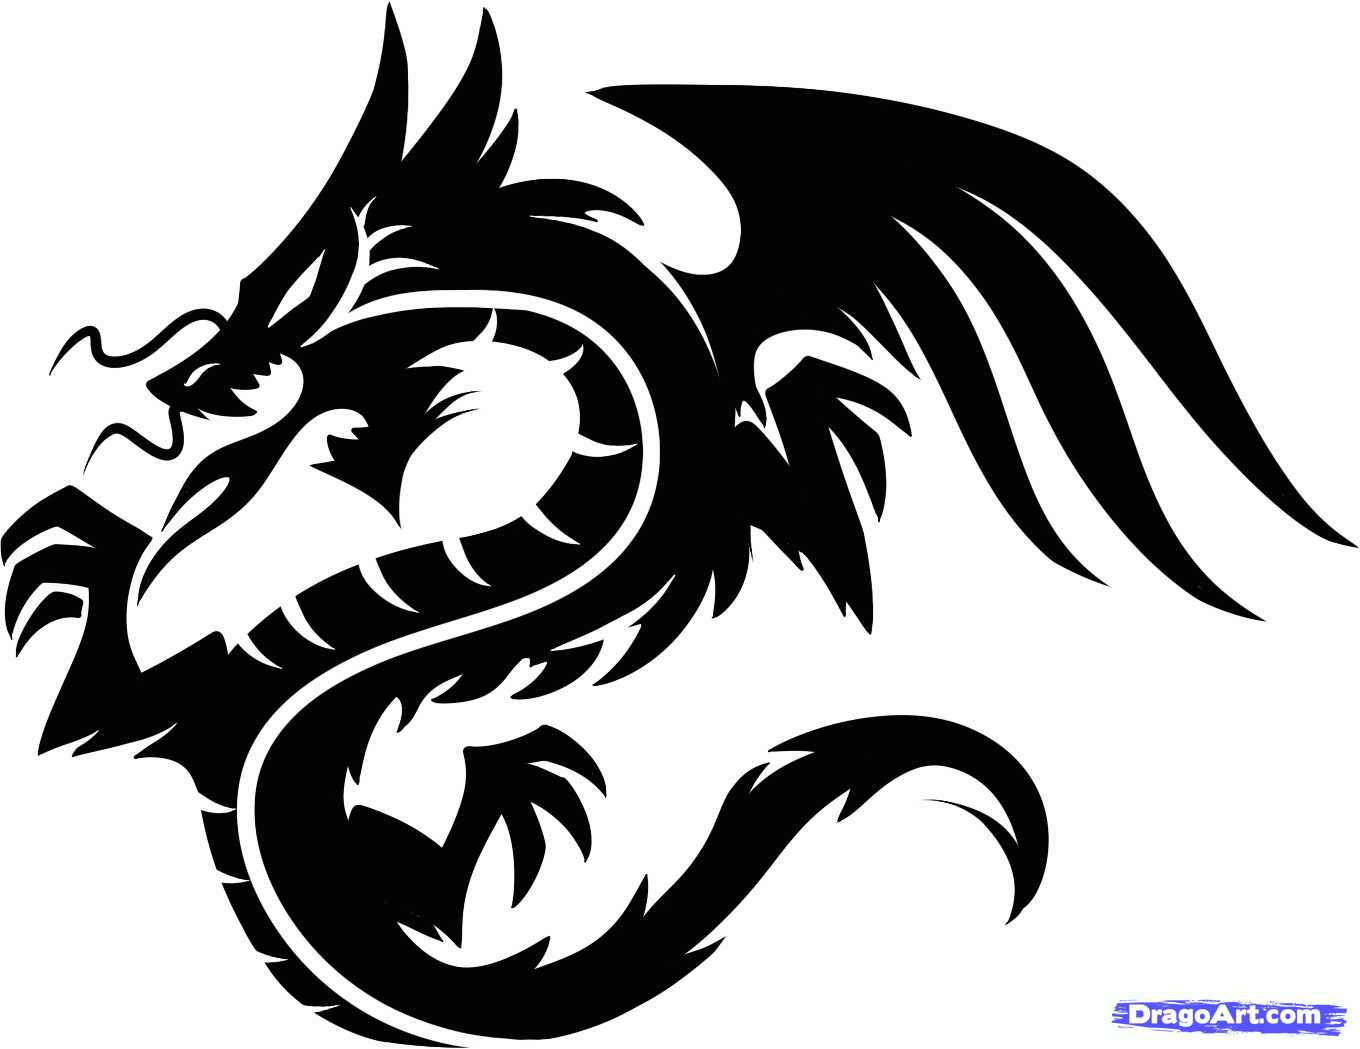 Black Ink Dragon Tattoo Design Idea